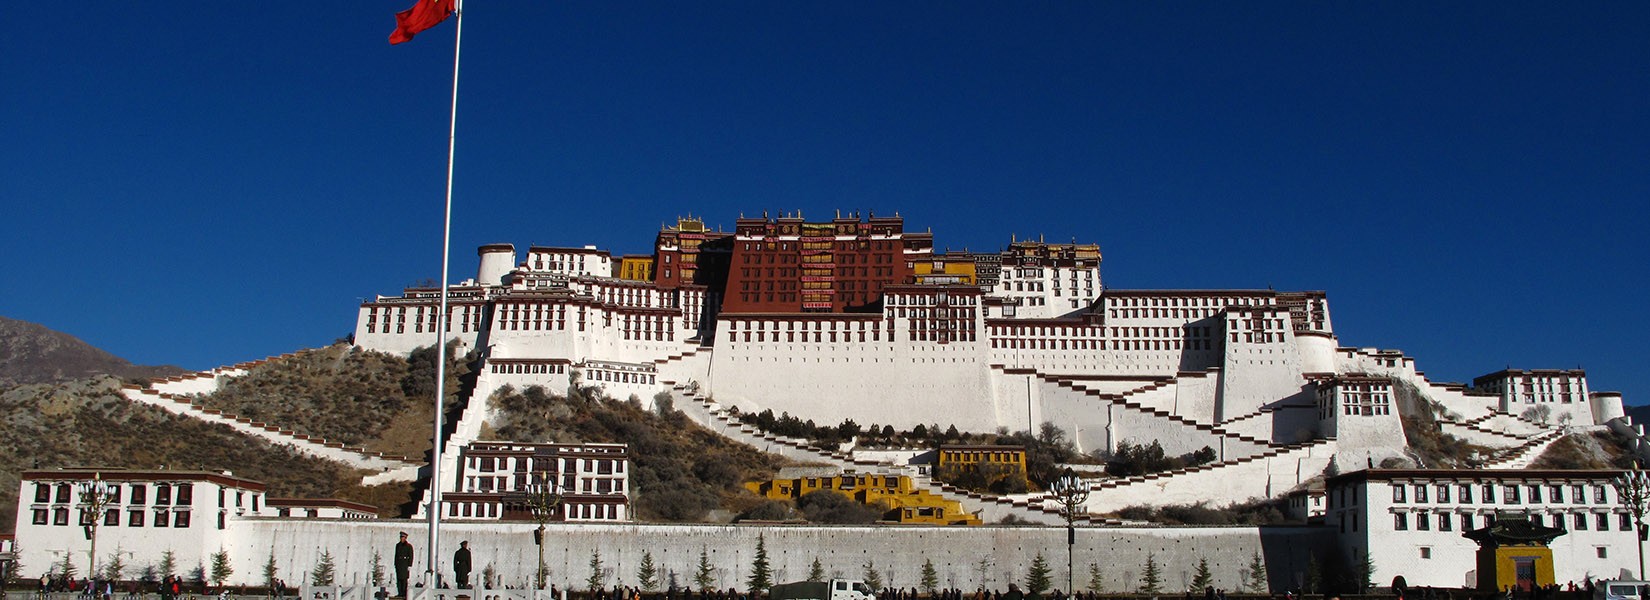 Potala-palace-Tibet